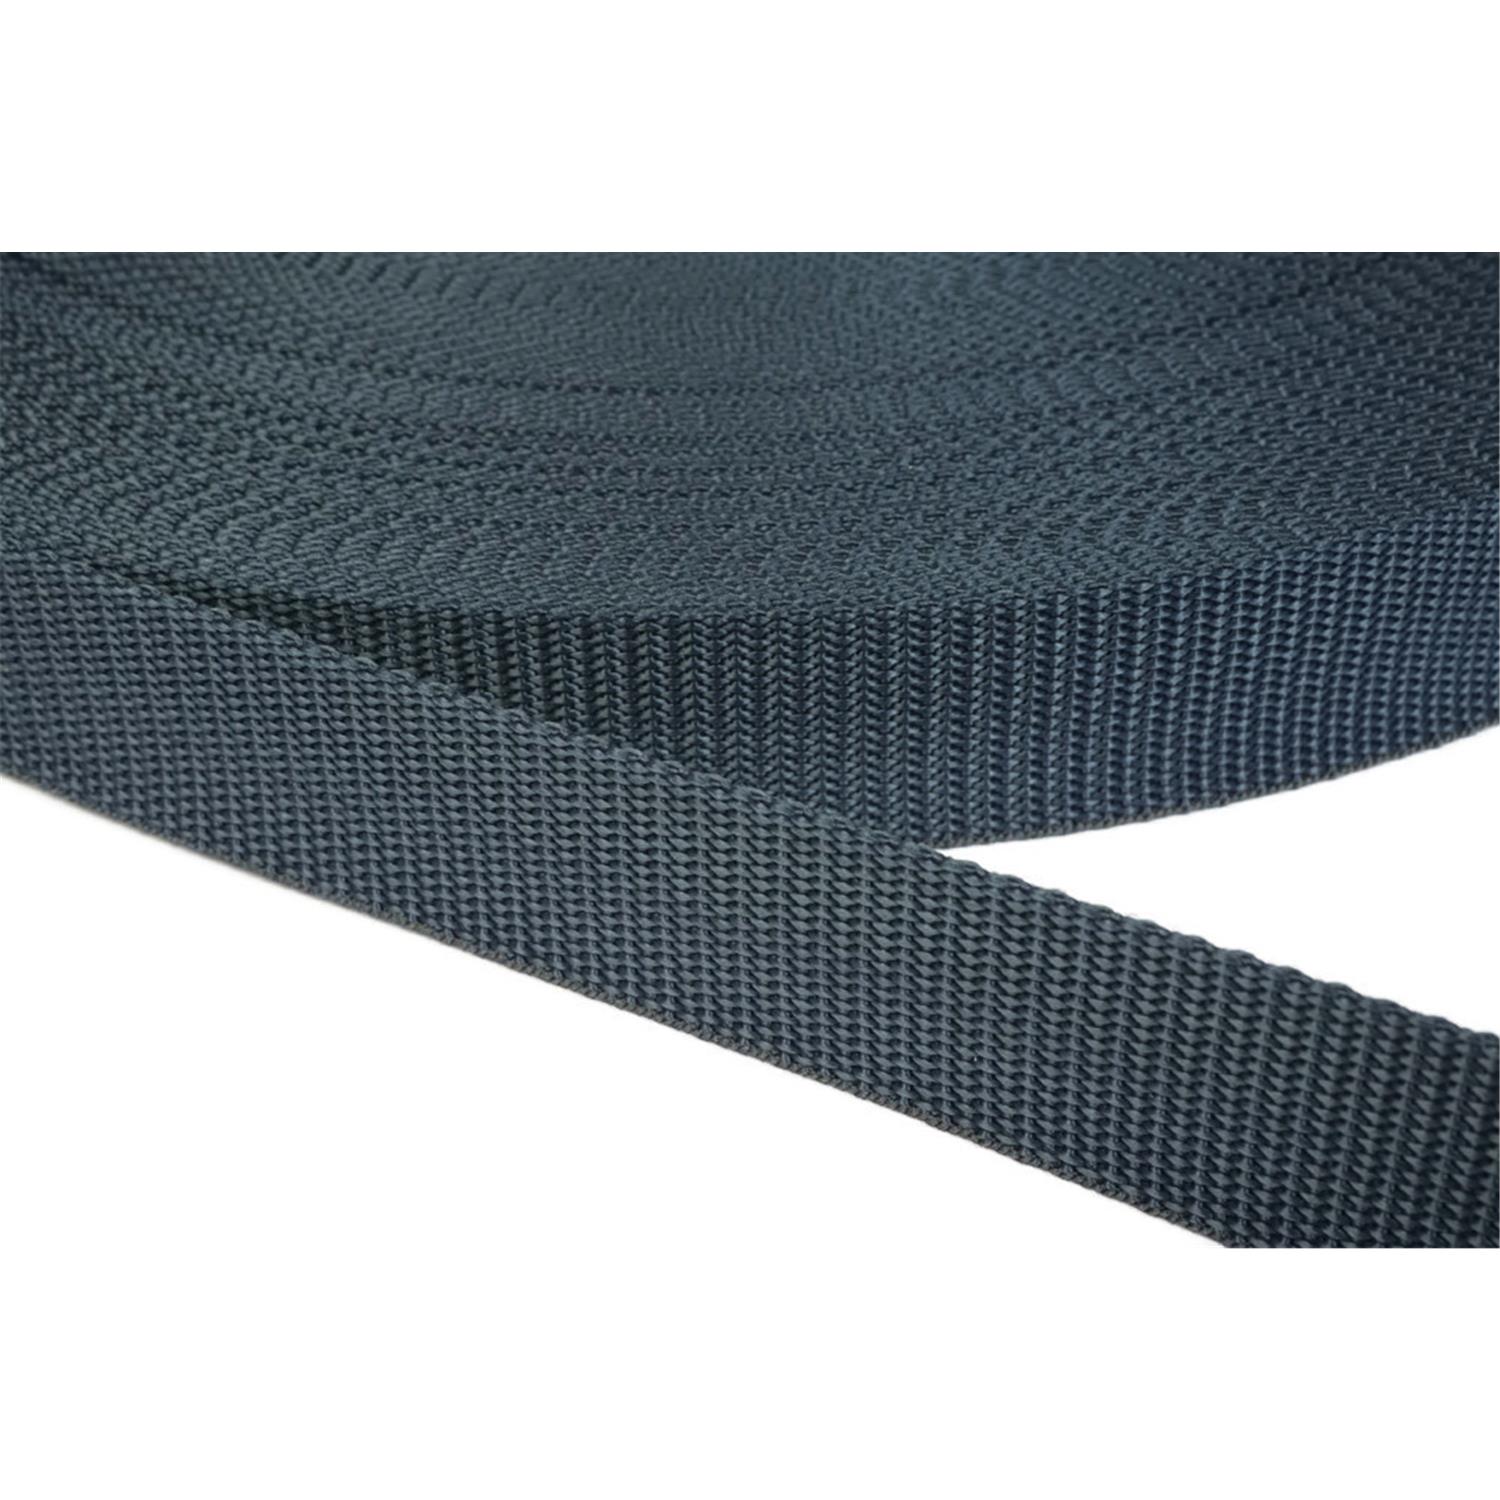 Gurtband 25mm breit aus Polypropylen in 41 Farben 40 - dunkelgrau/blau 6 Meter